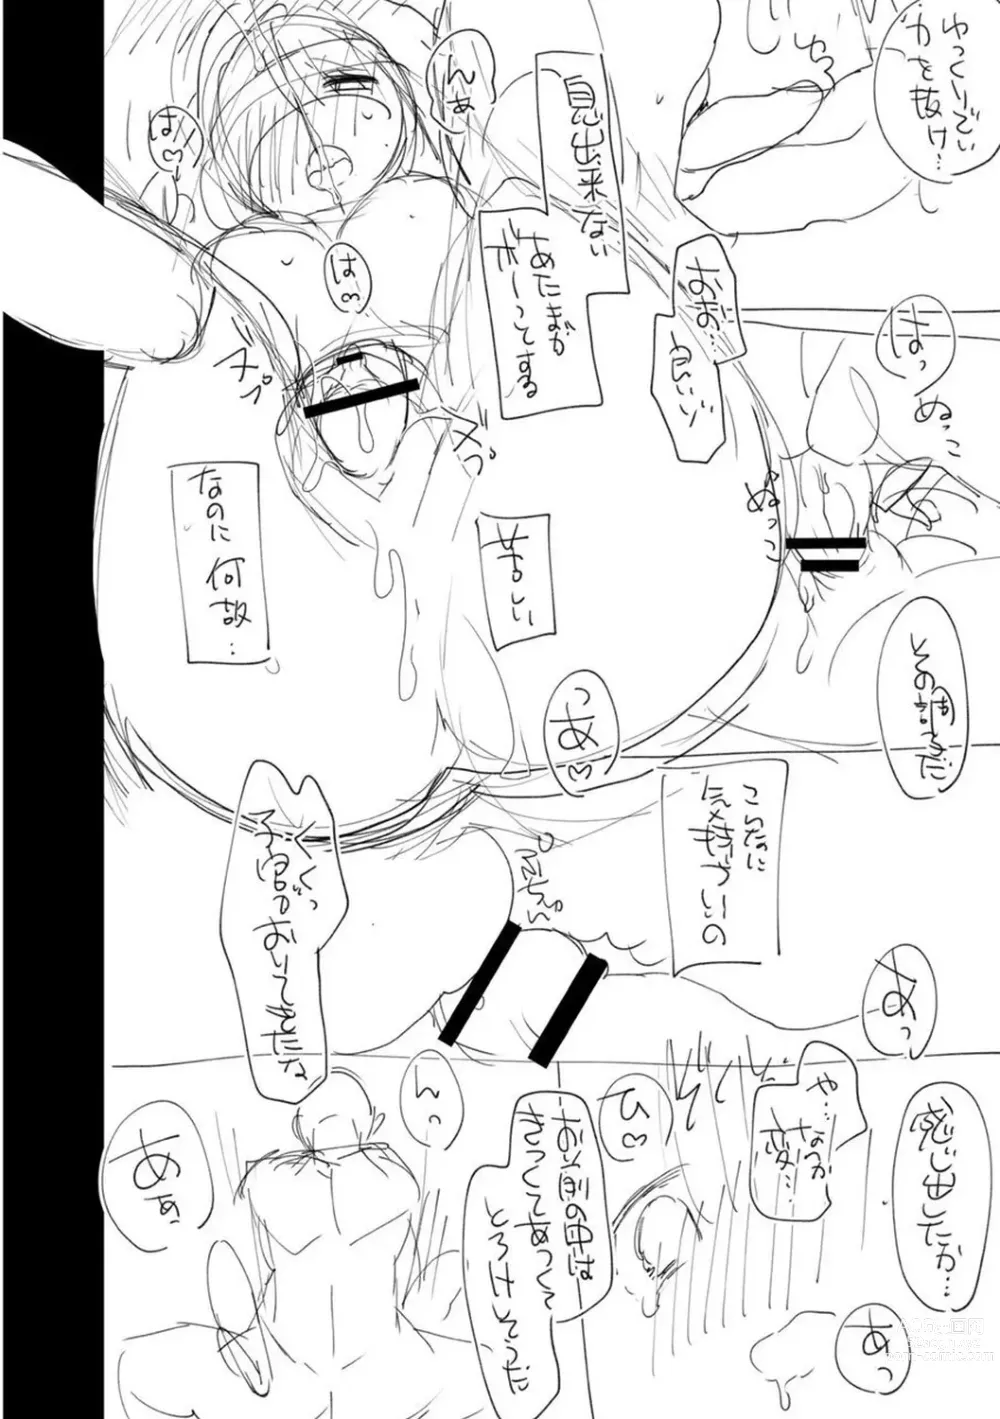 Page 246 of manga Junai Holic